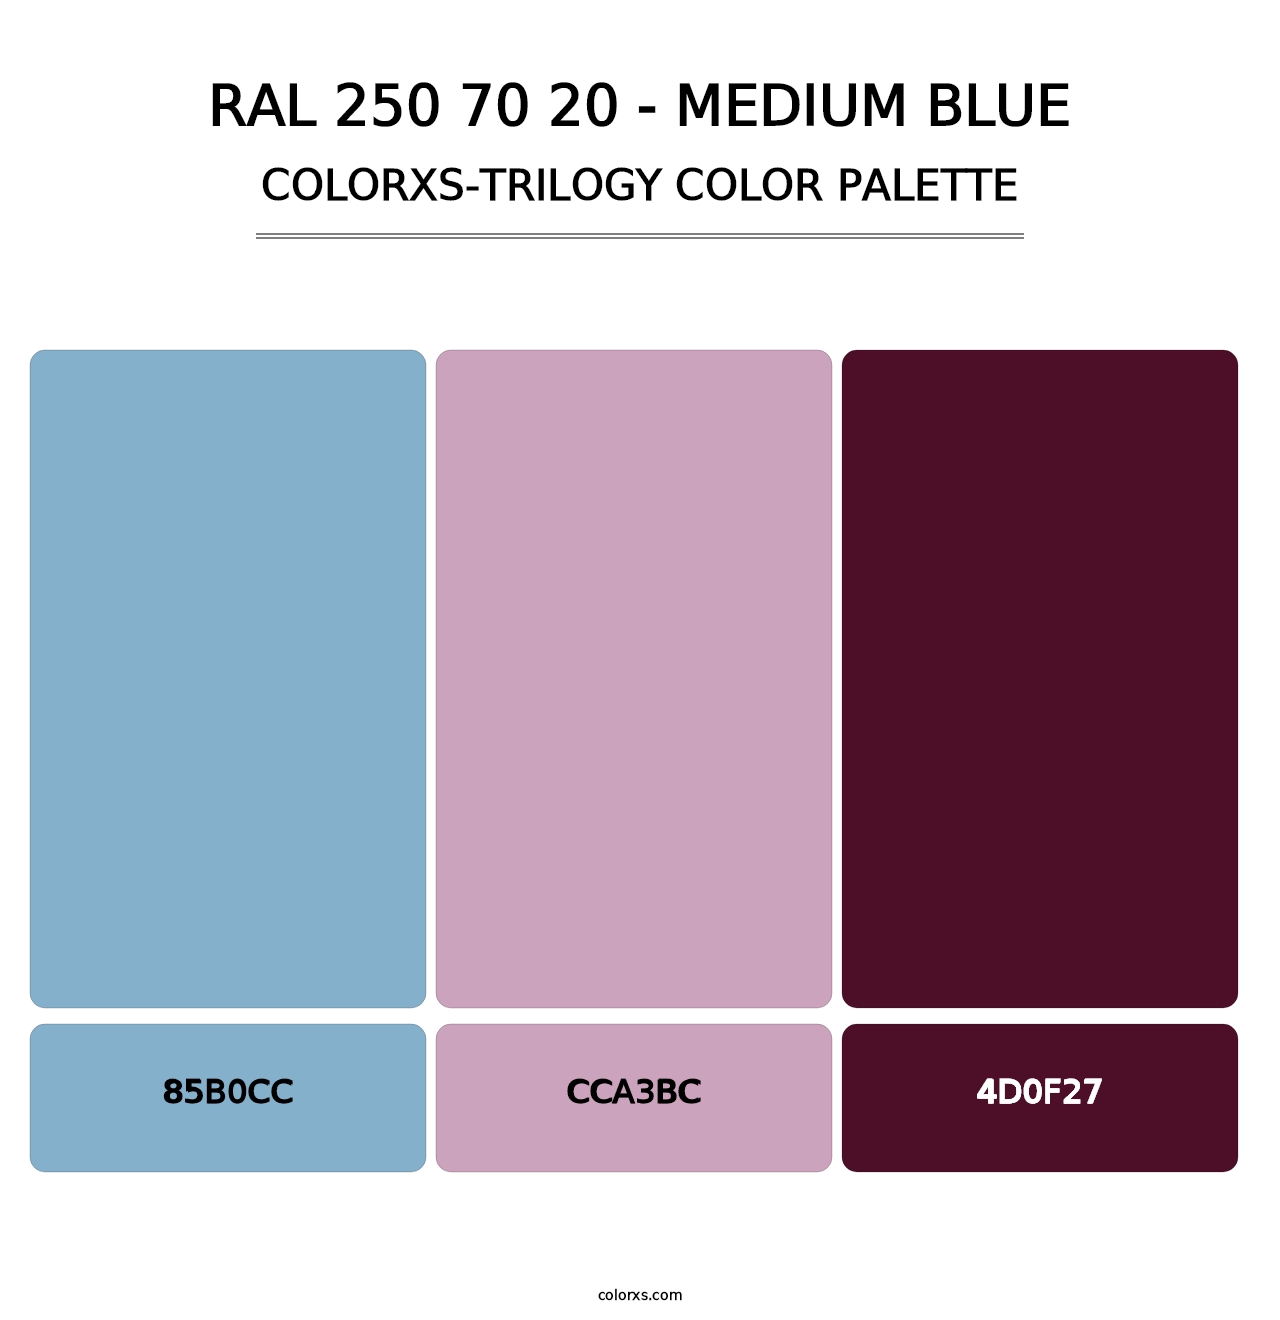 RAL 250 70 20 - Medium Blue - Colorxs Trilogy Palette